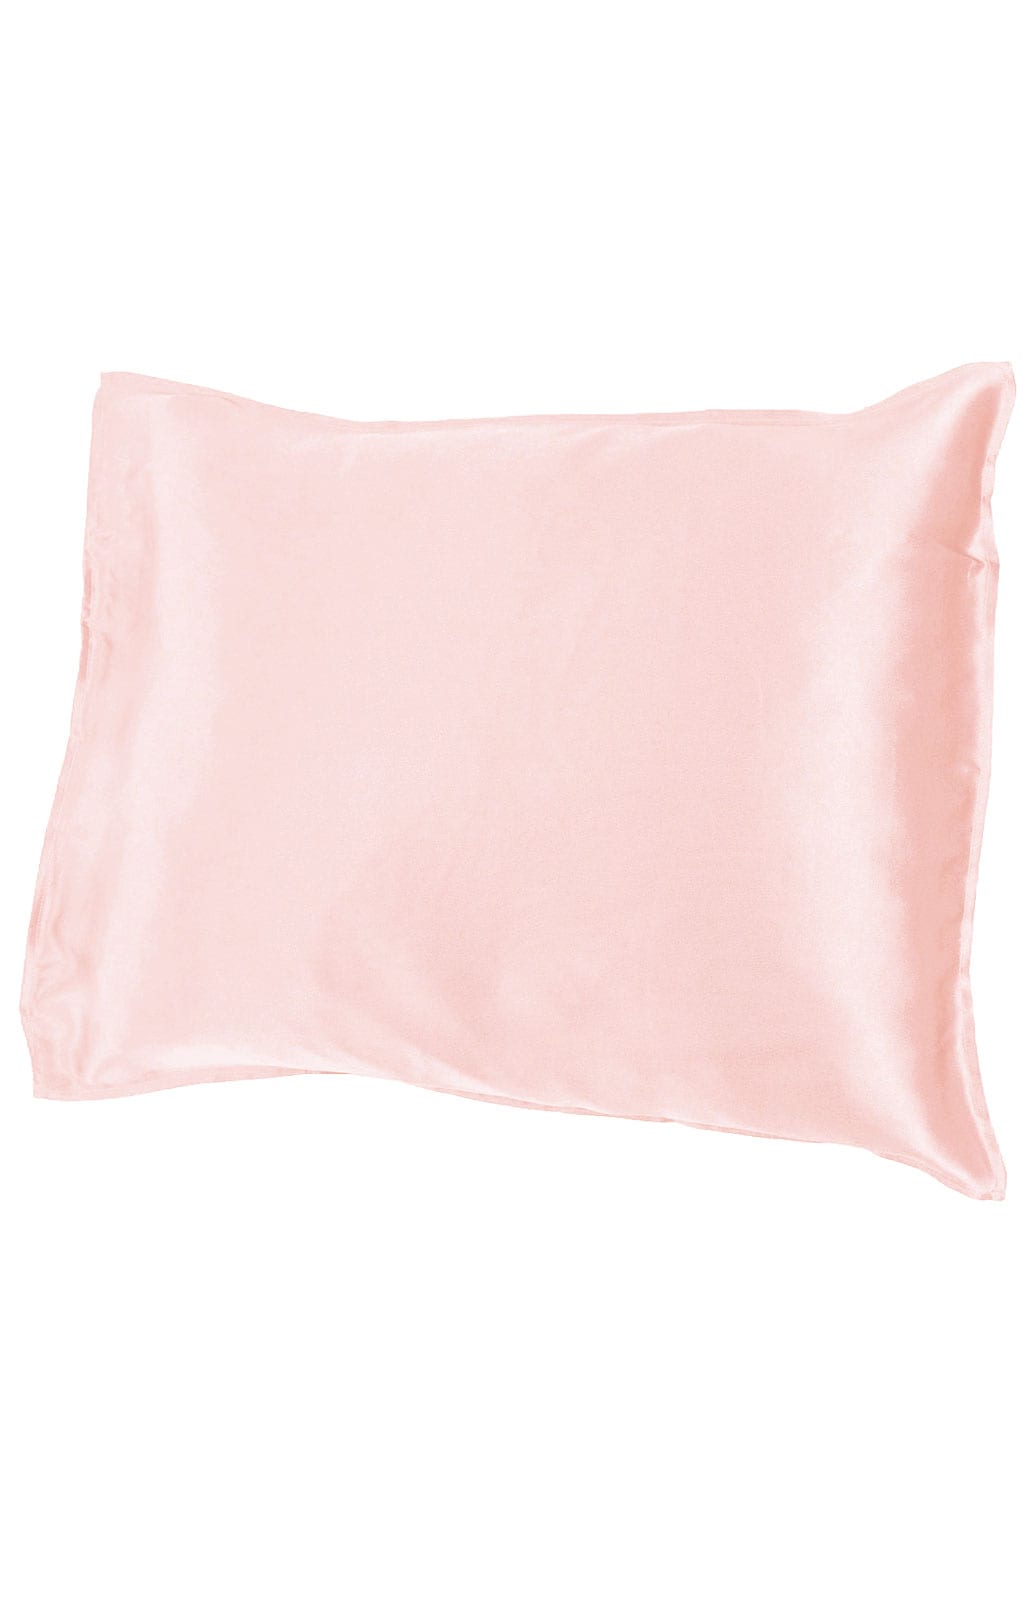 Silk pillowcase, pink